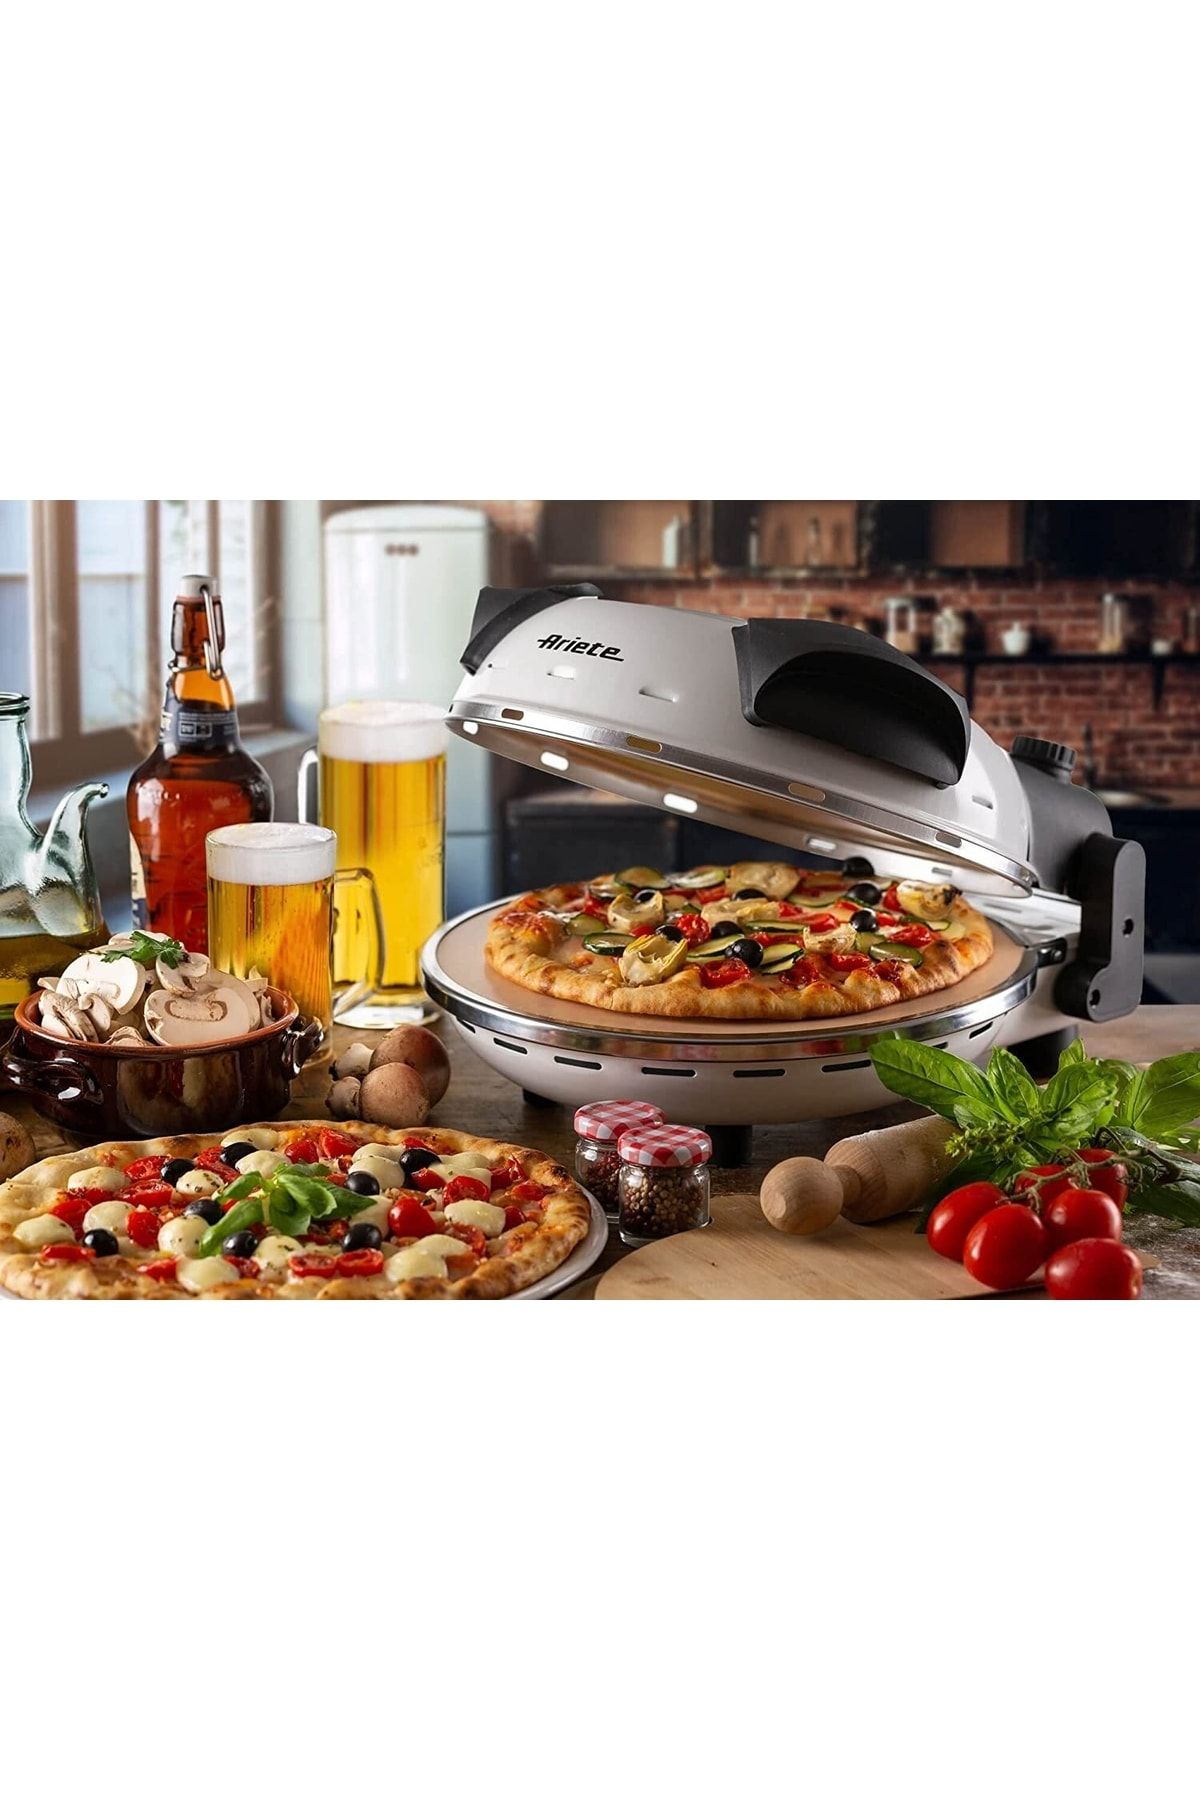 ARİETE VİNTAGE Ariete 918 Pizza 4 Dakika, Pizza Fırını Fiyatı, Yorumları -  Trendyol